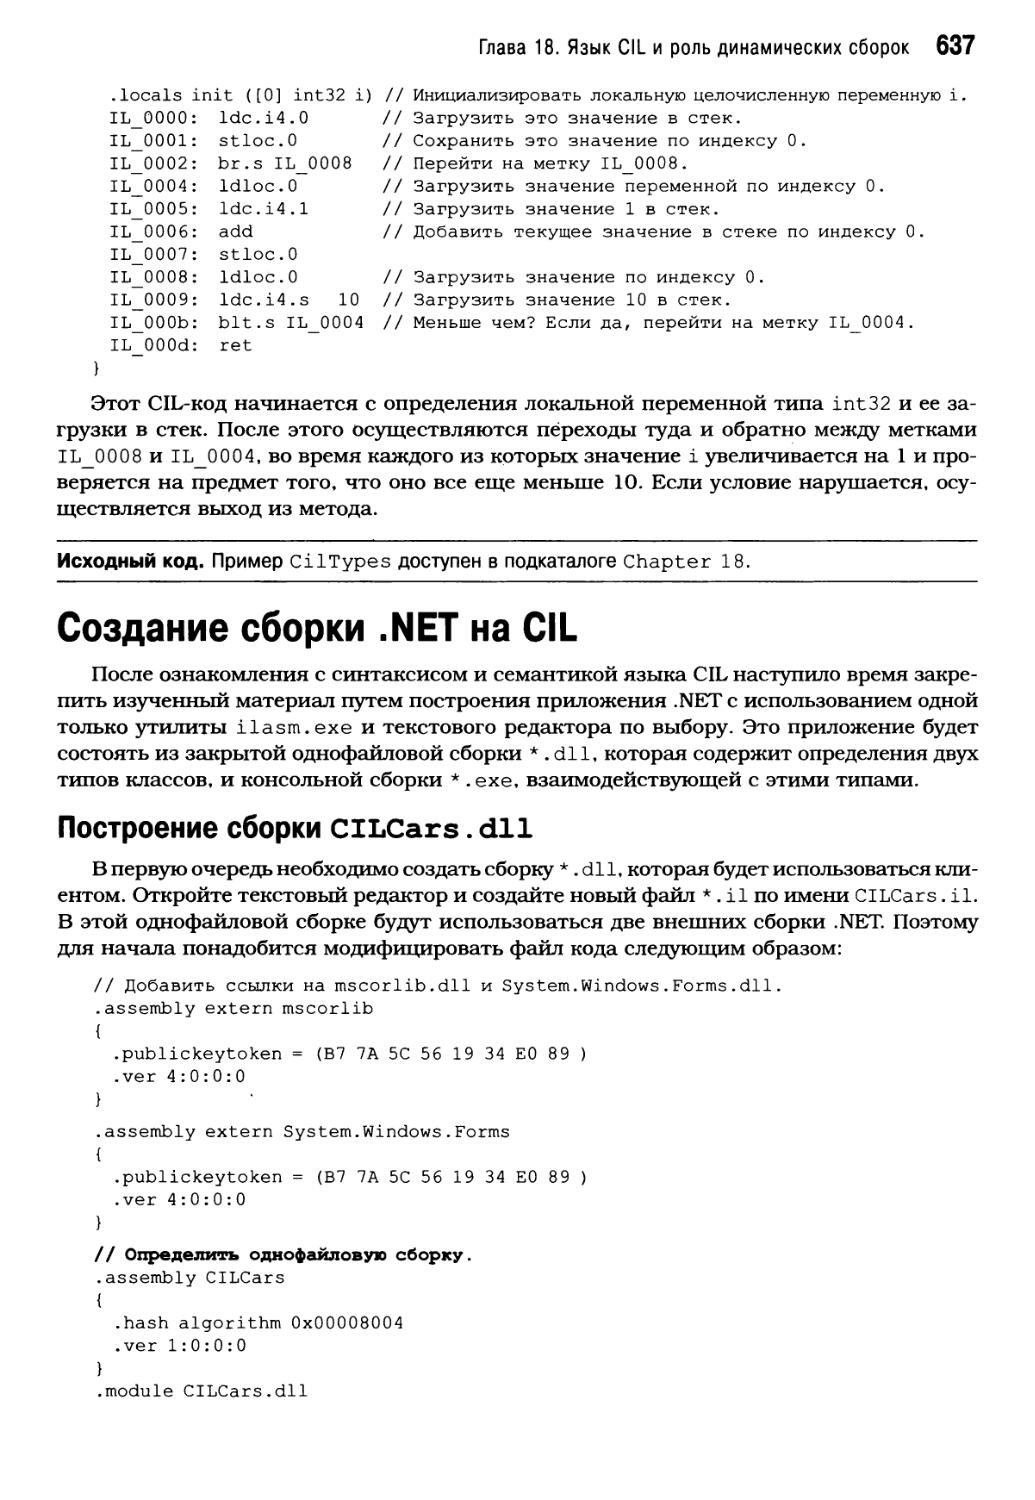 Создание сборки .NET на CIL